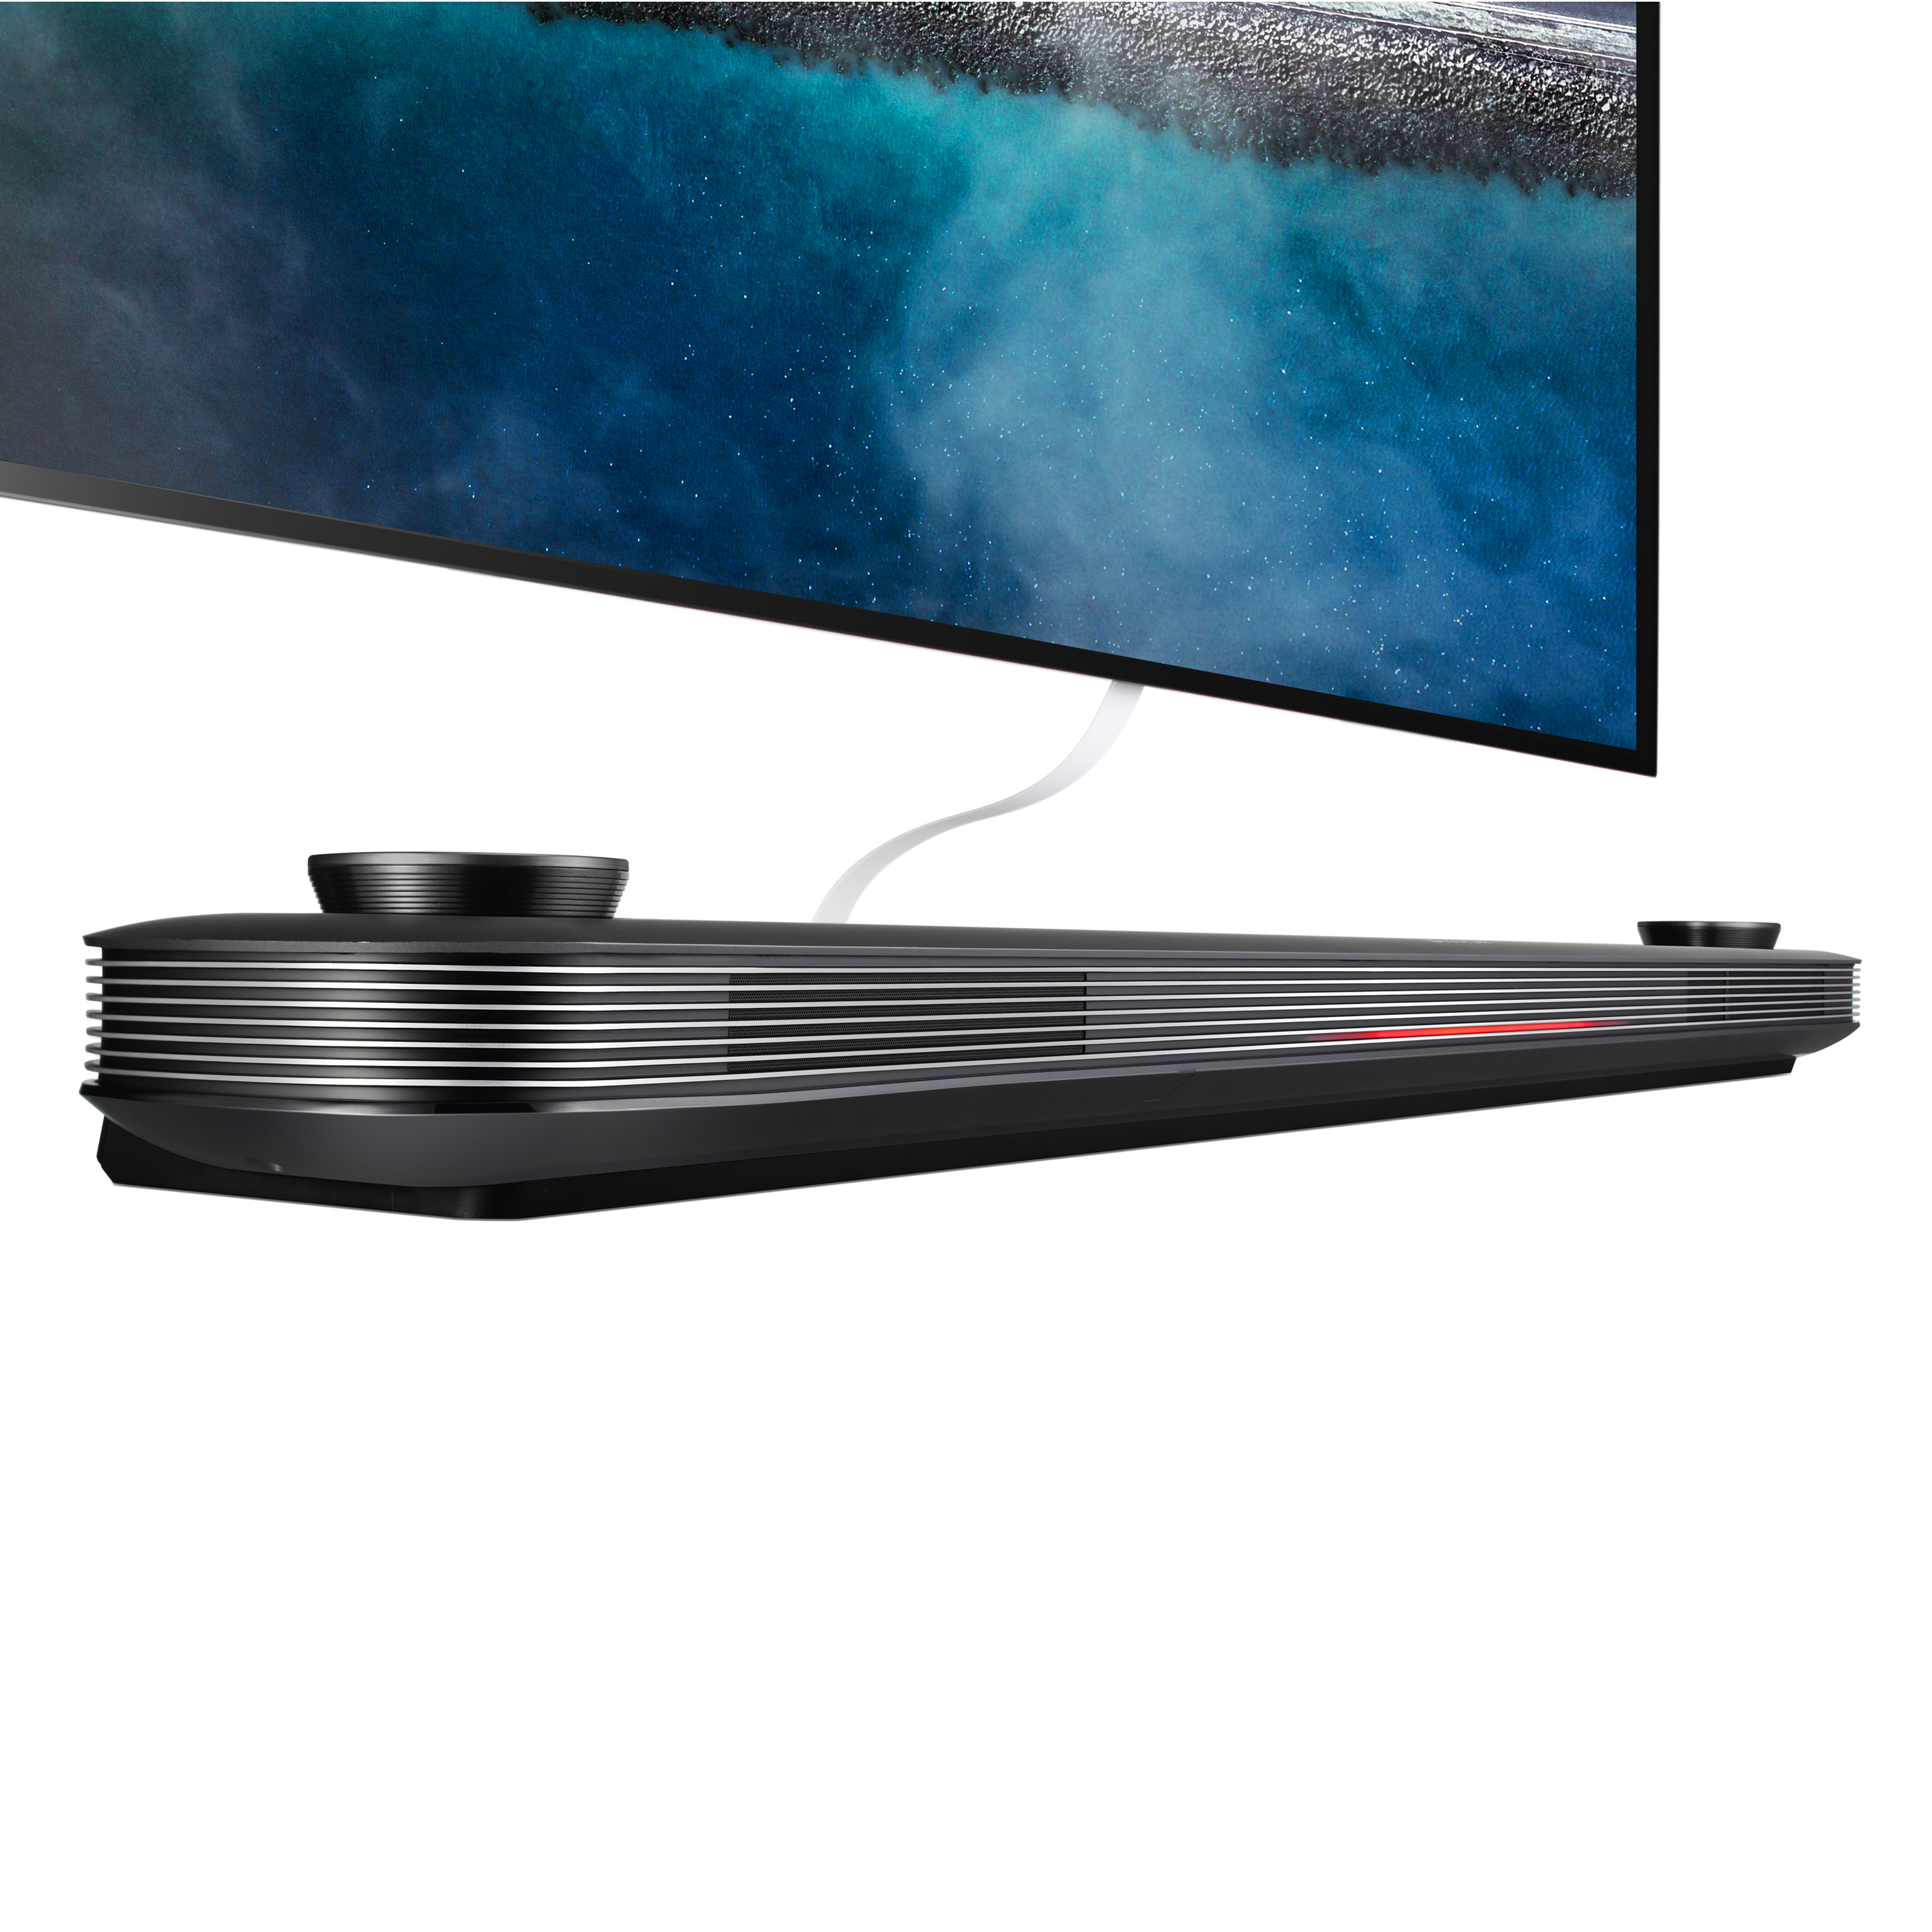 LG 65" Class OLED W9 Series 4K (2160P) HDR Smart TV w/AI ThinQ - OLED65W9PUA 2019 Model - image 5 of 14